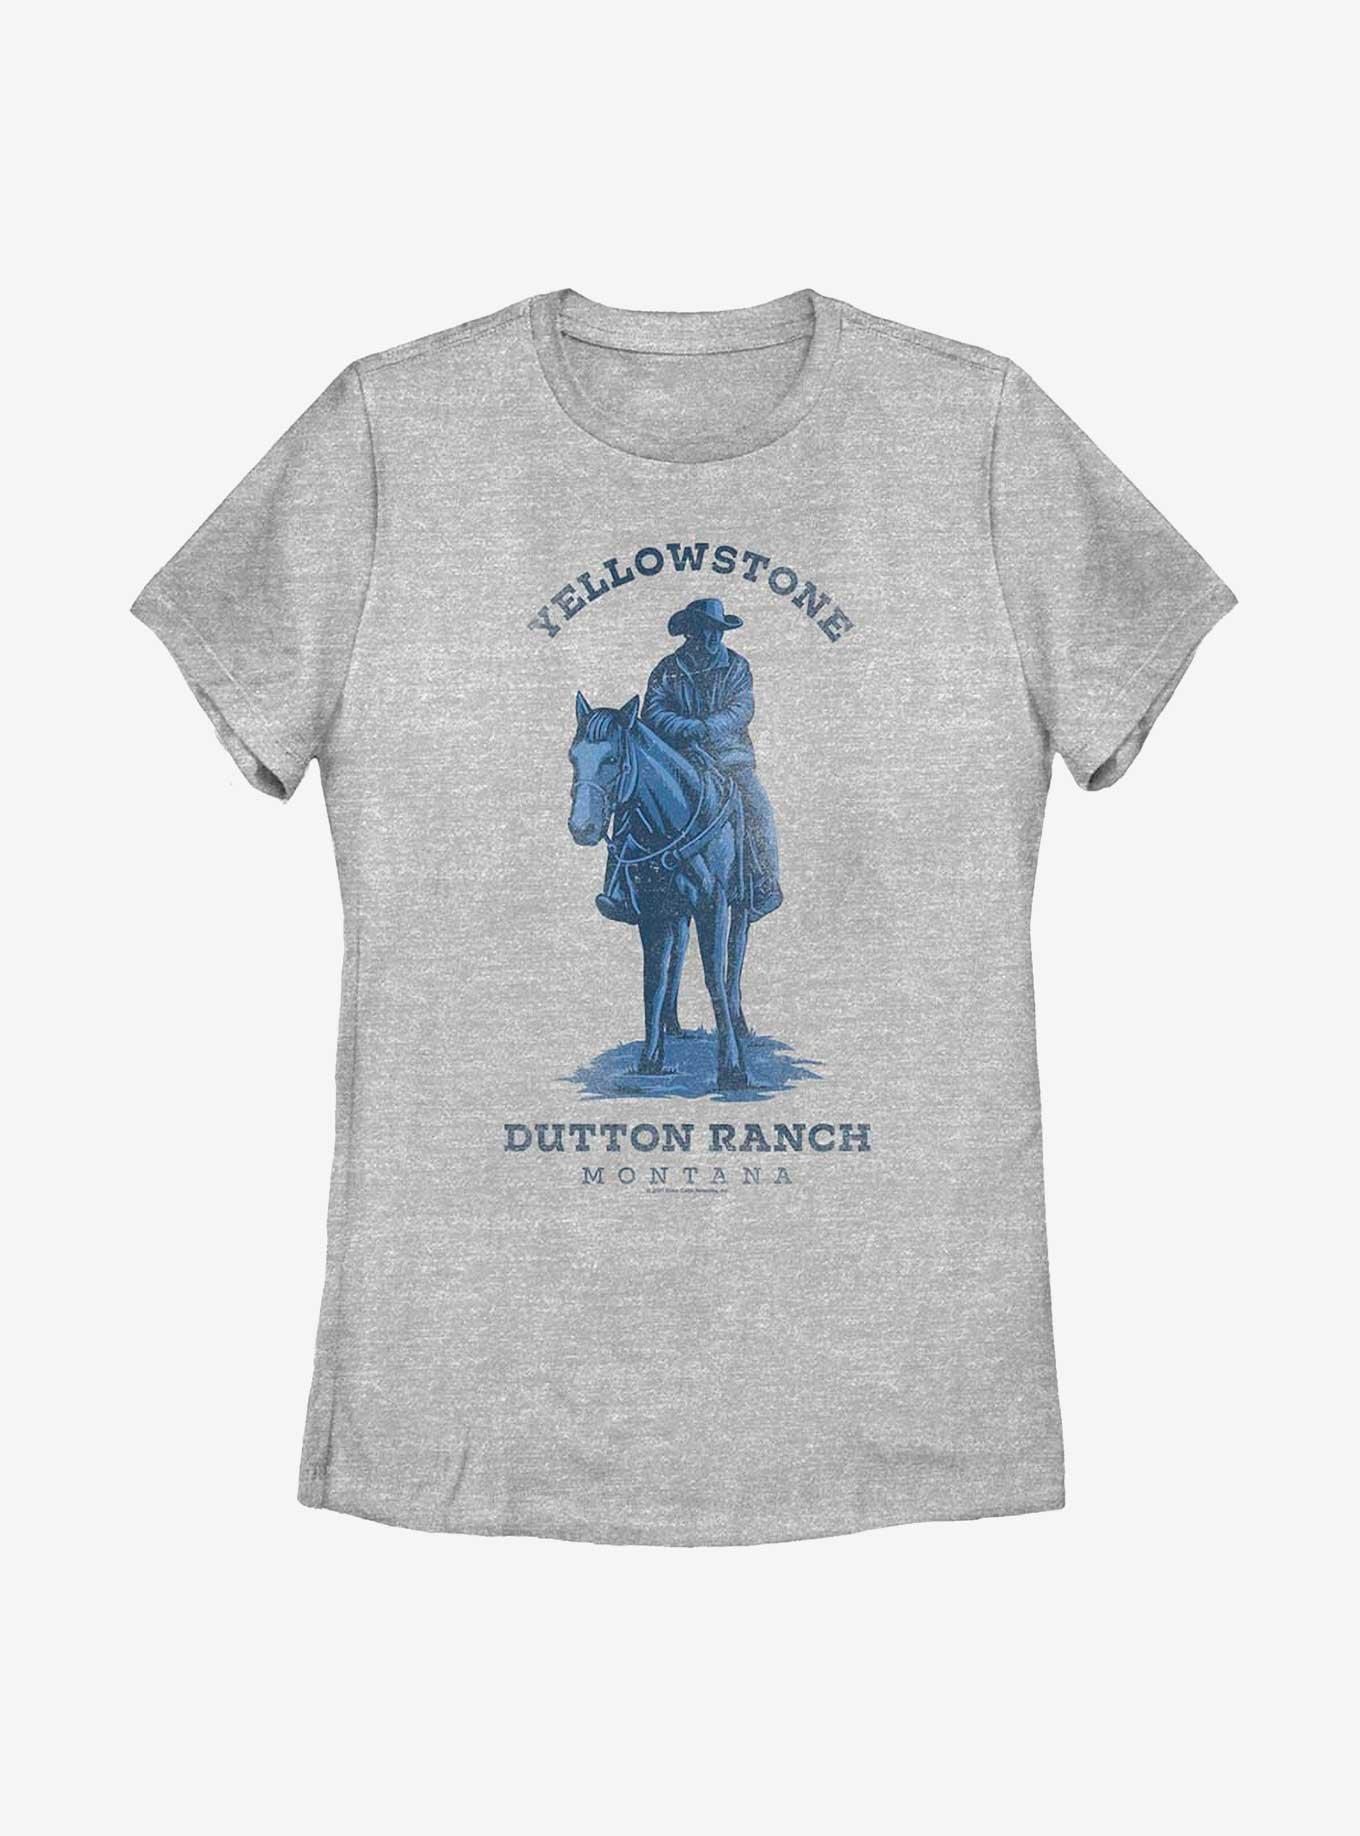 Yellowstone Dutton Ranch Womens T-Shirt, ATH HTR, hi-res